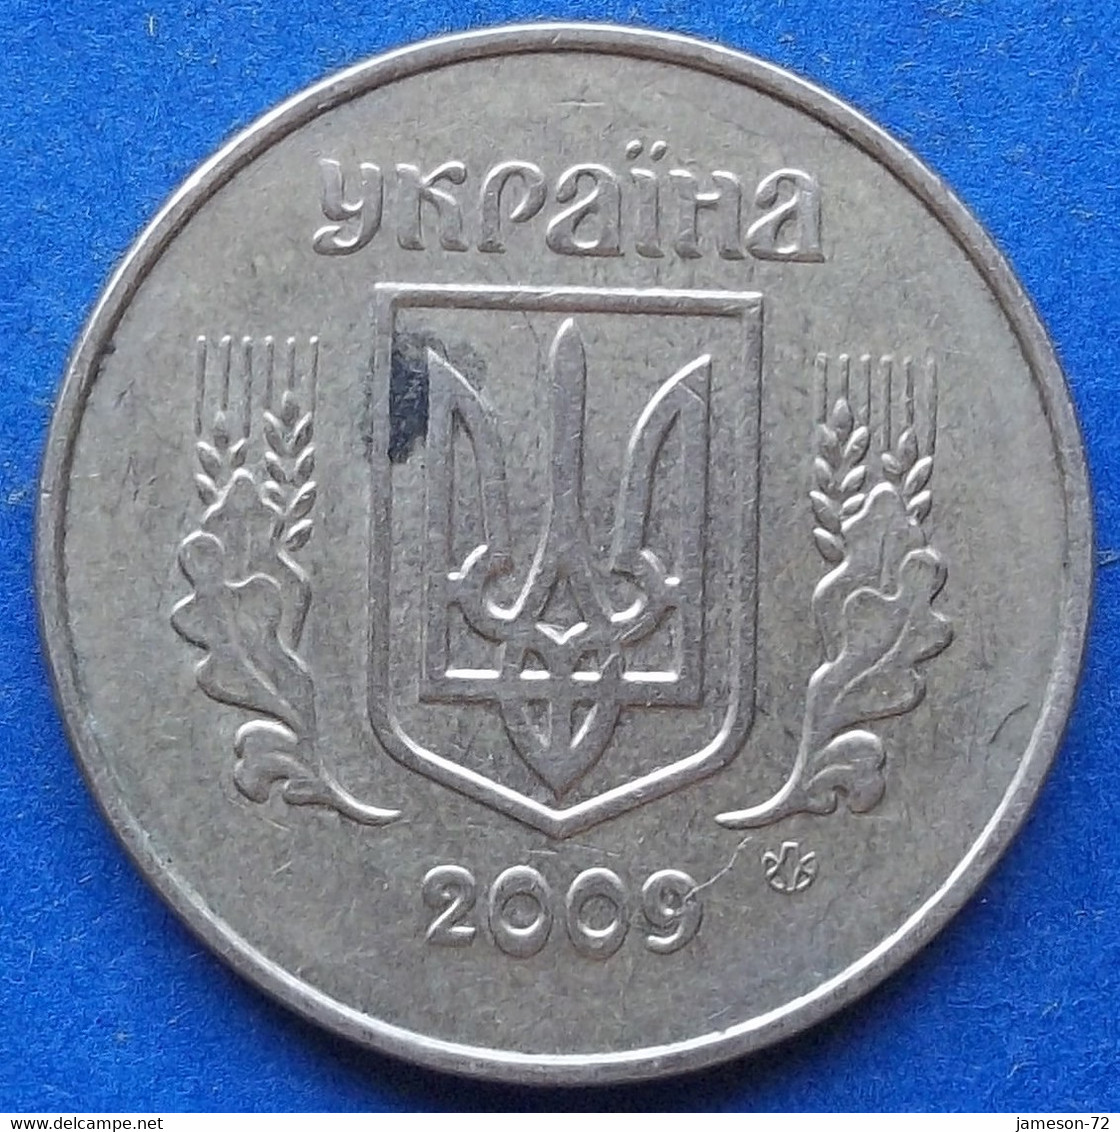 UKRAINE - 50 Kopiyok 2009 KM# 3.3b Reform Coinage (1996) - Edelweiss Coins - Ucraina